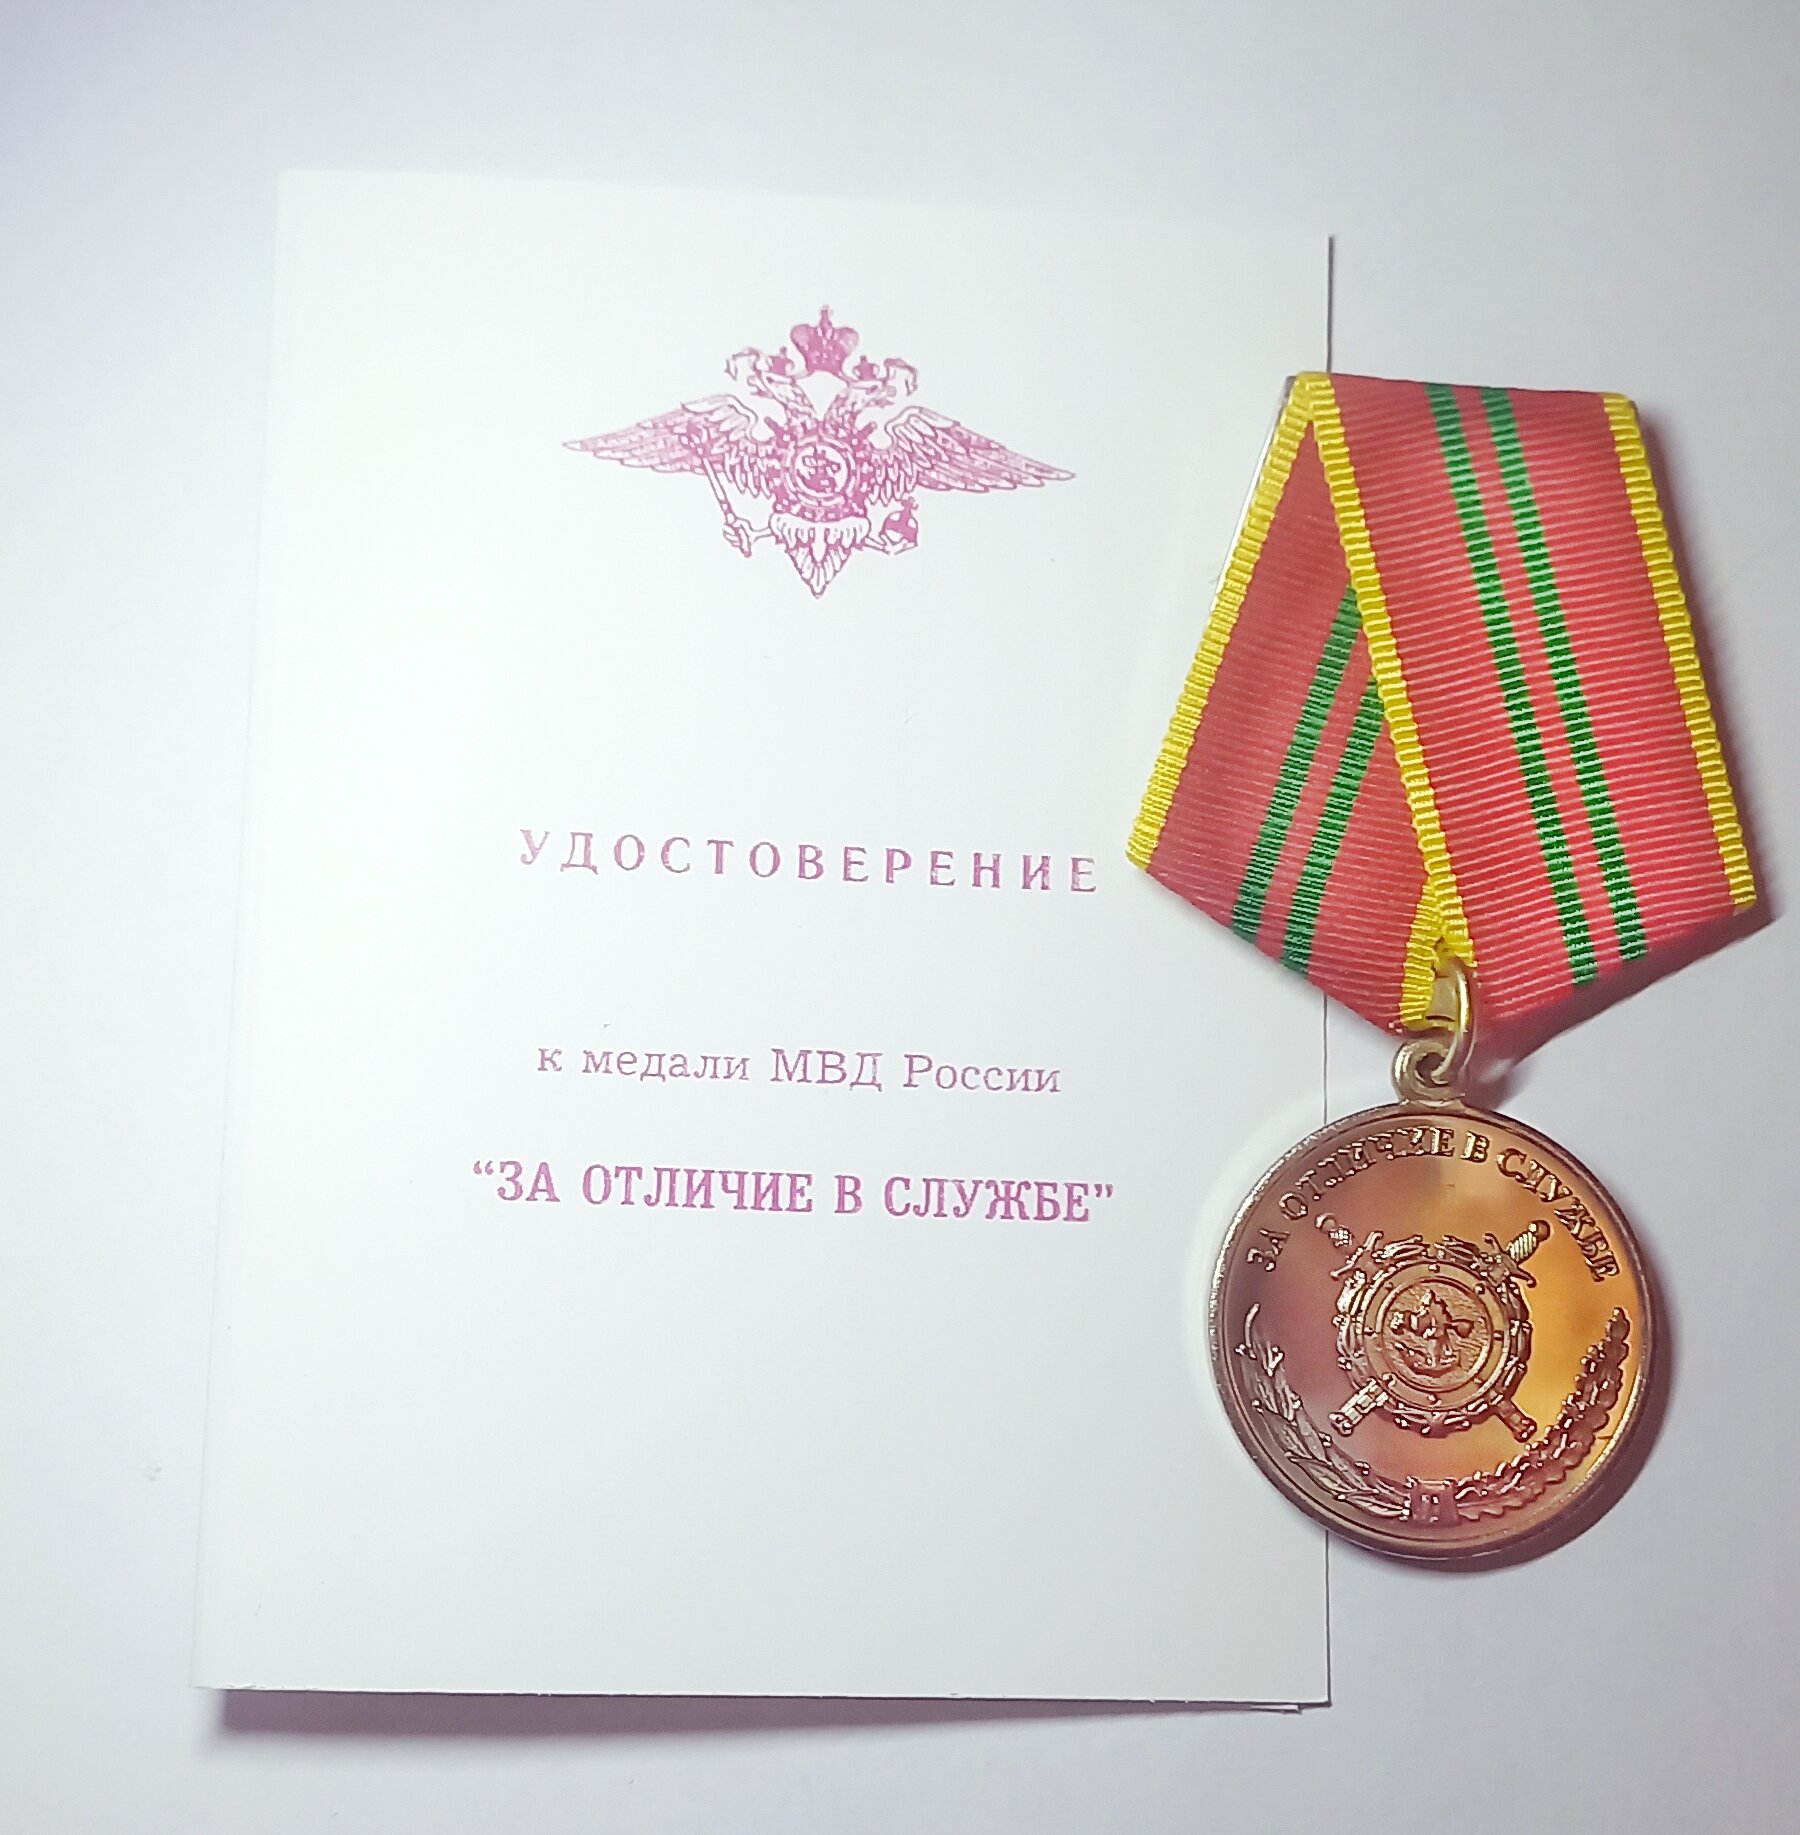 Медаль МВД "За отличие в службе" 2 степени (с удостоверением)